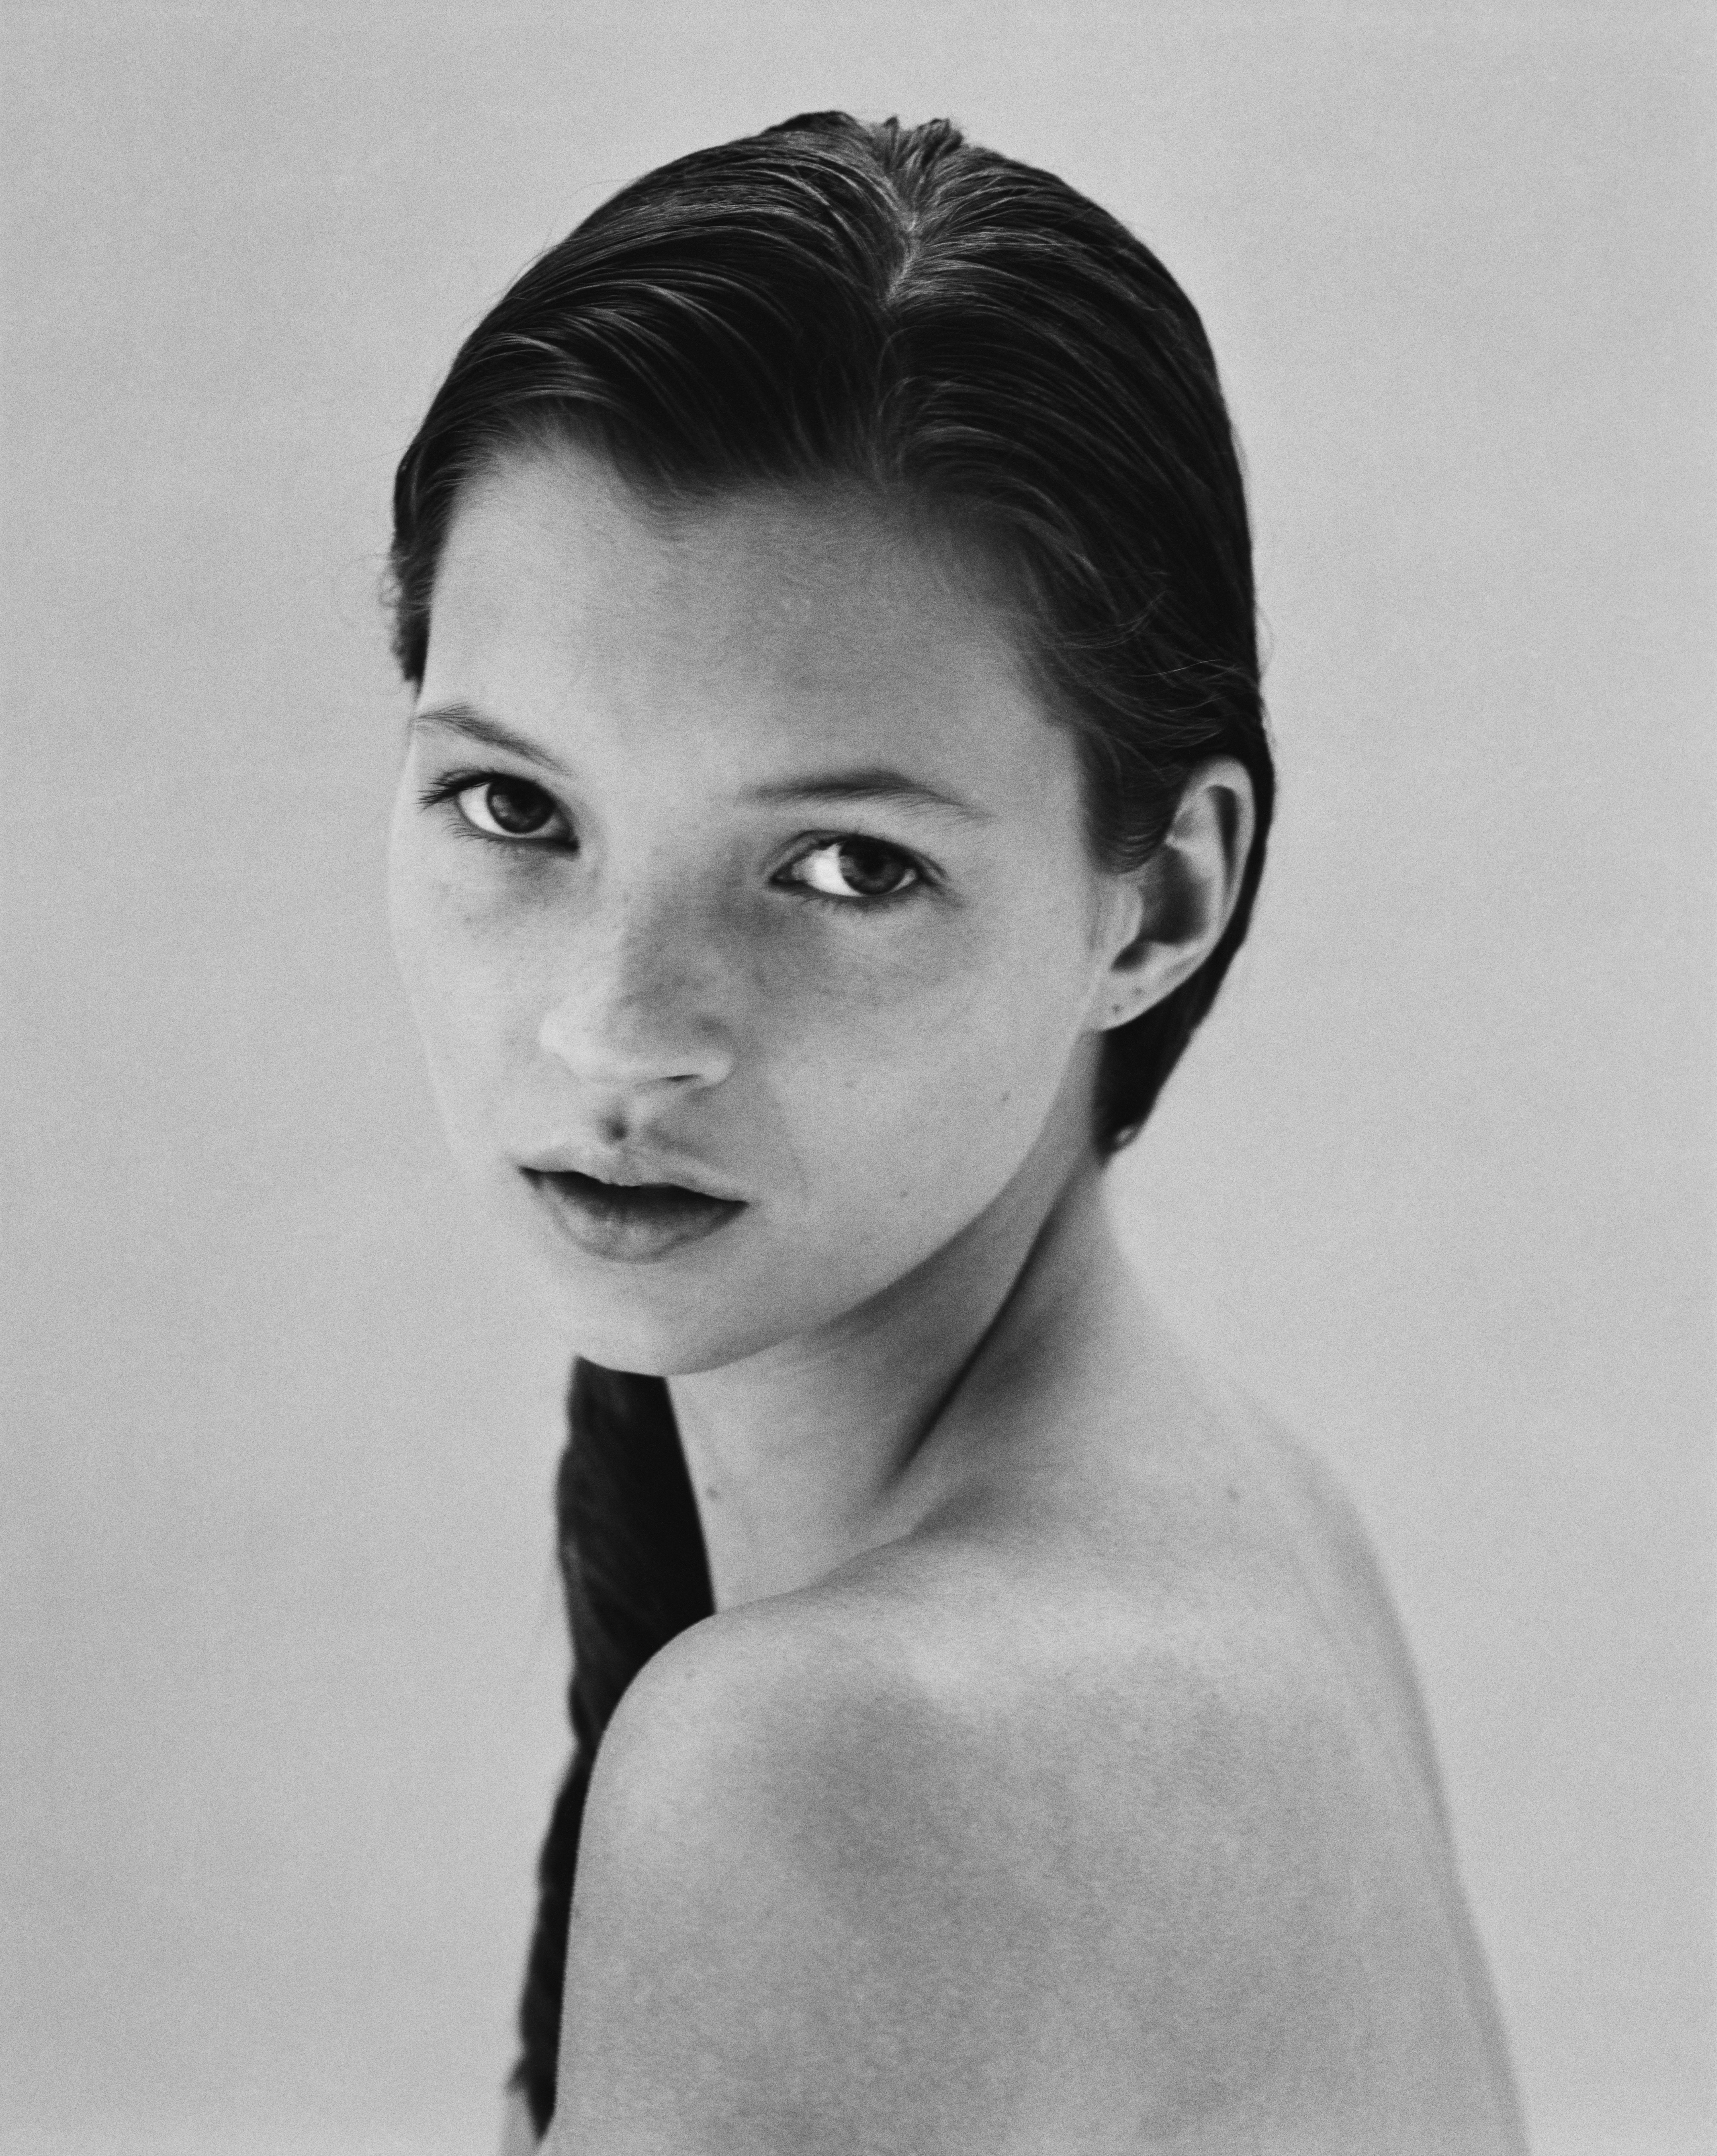 Jake Chessum Black and White Photograph – Kate Moss mit 16 Jahren